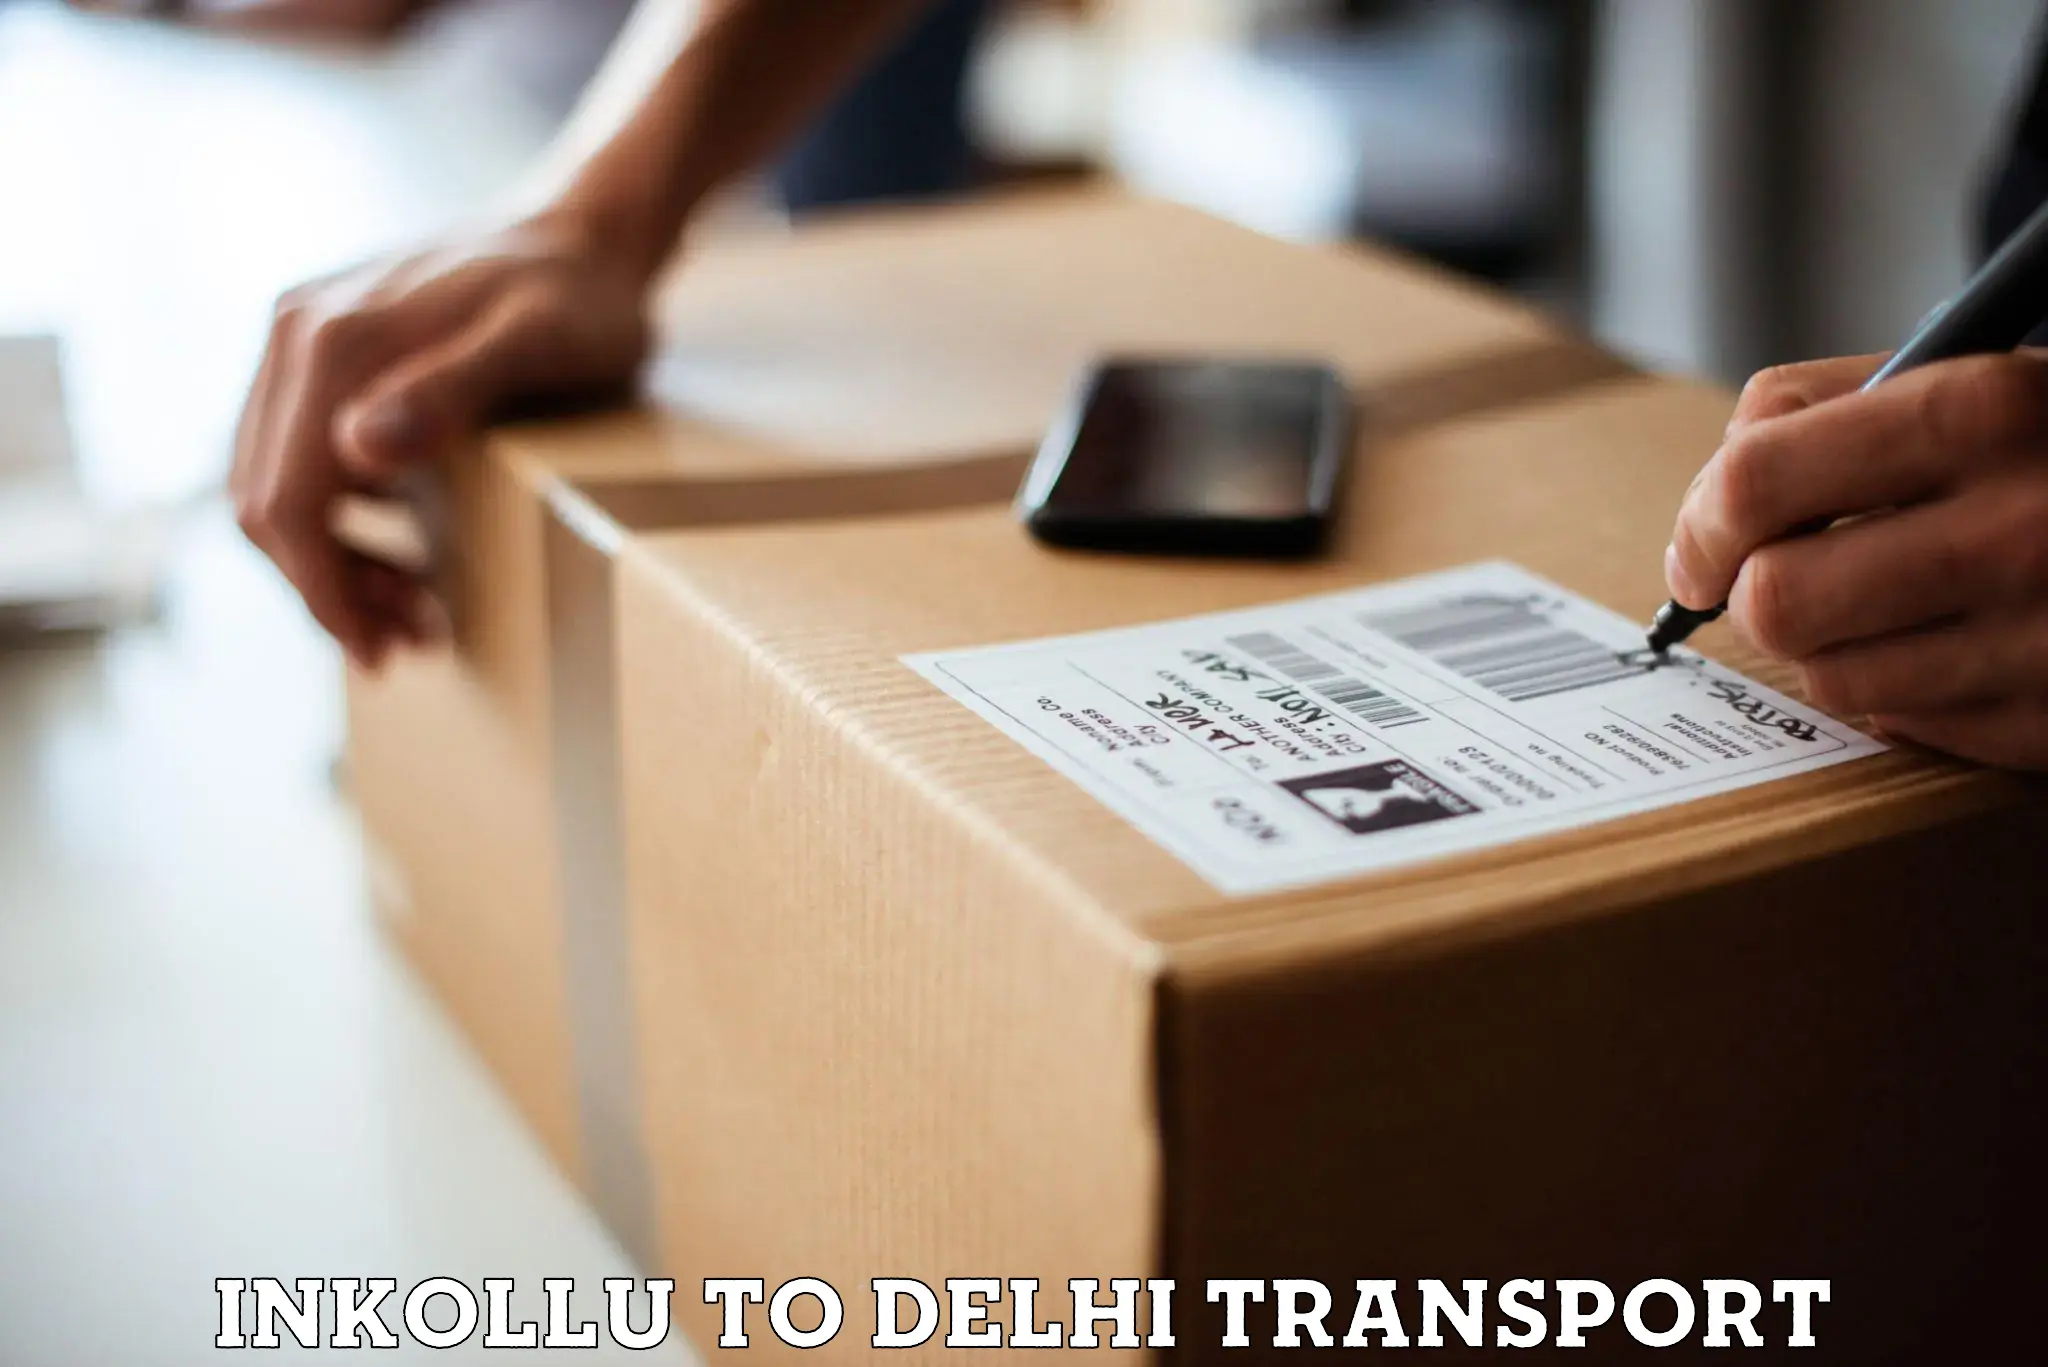 Nearby transport service Inkollu to Delhi